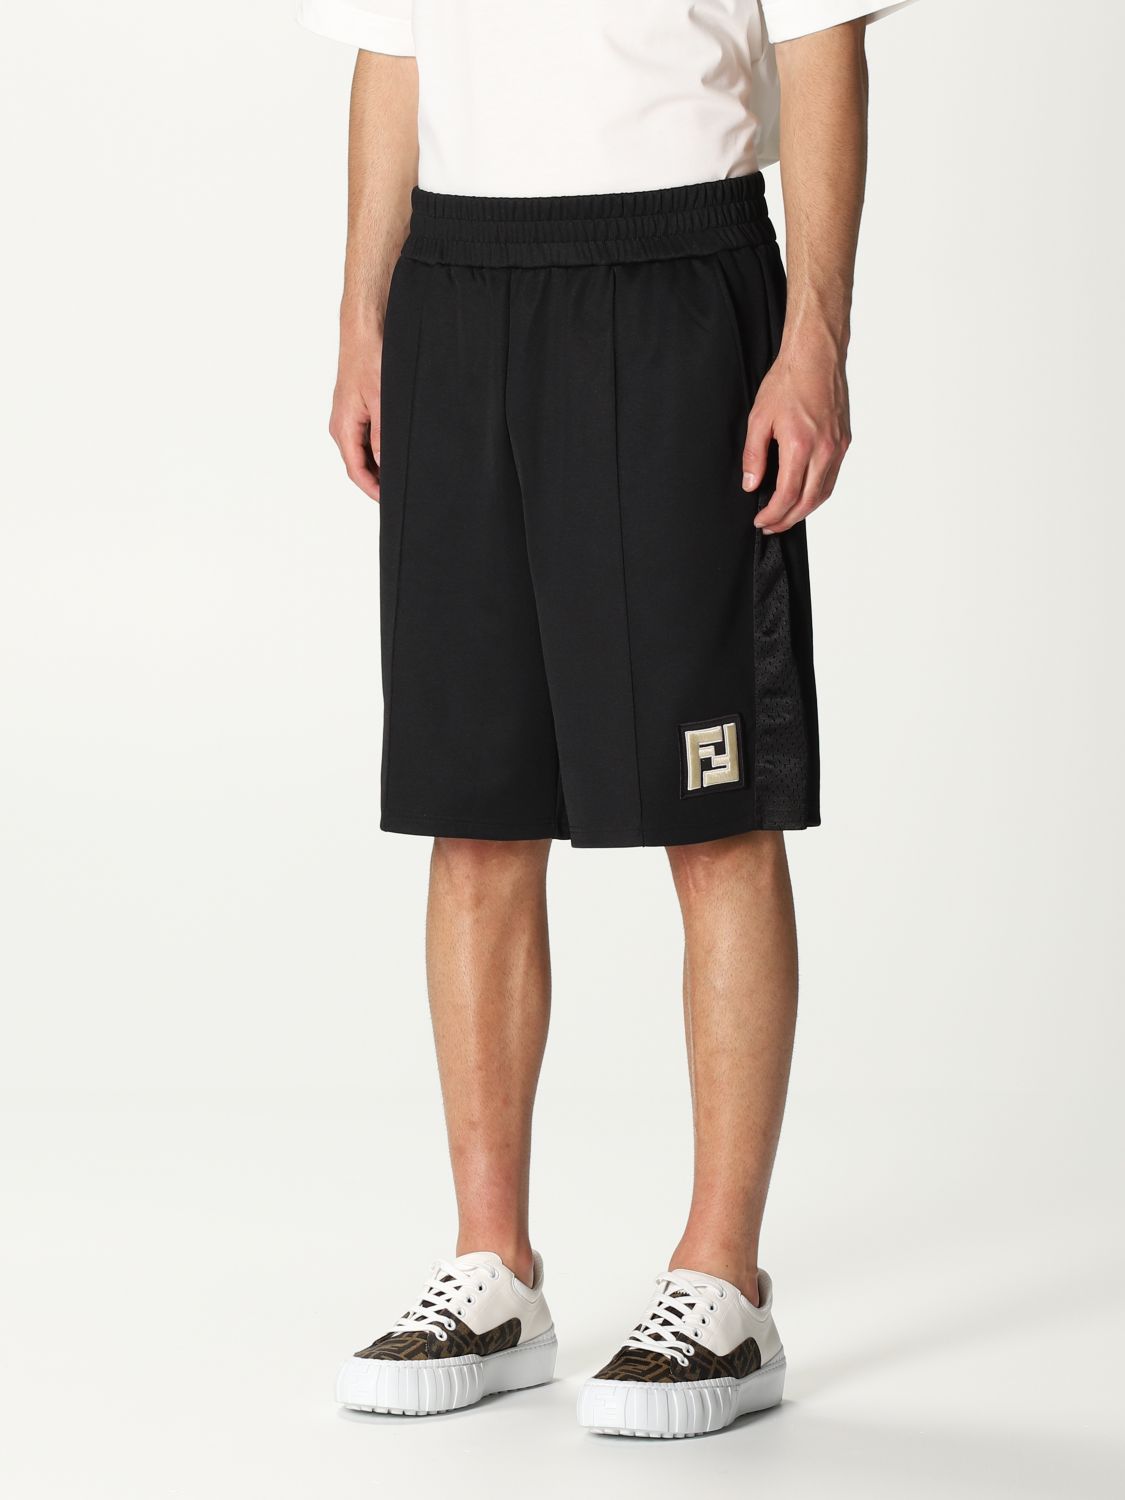 FENDI: jogging bermuda shorts with FF logo | Short Fendi Men Black ...